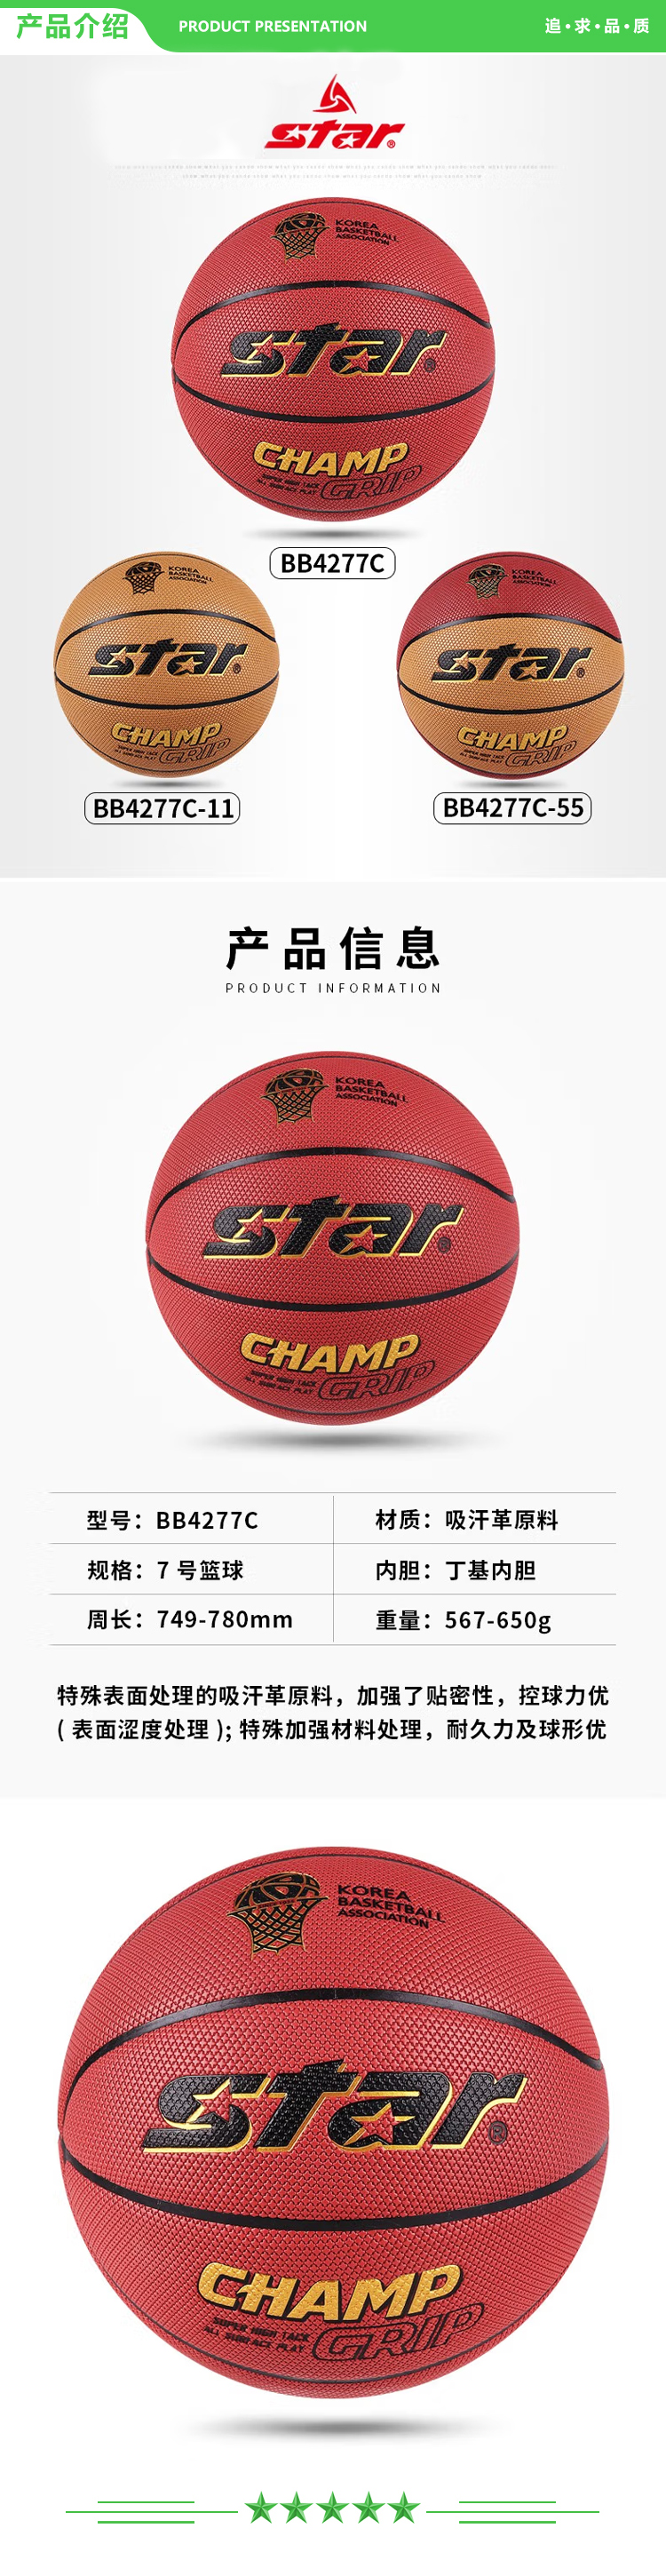 世达 star BB4277【吸汗革 7号球】 篮球 室内外通用训练篮球耐磨防滑 2.jpg